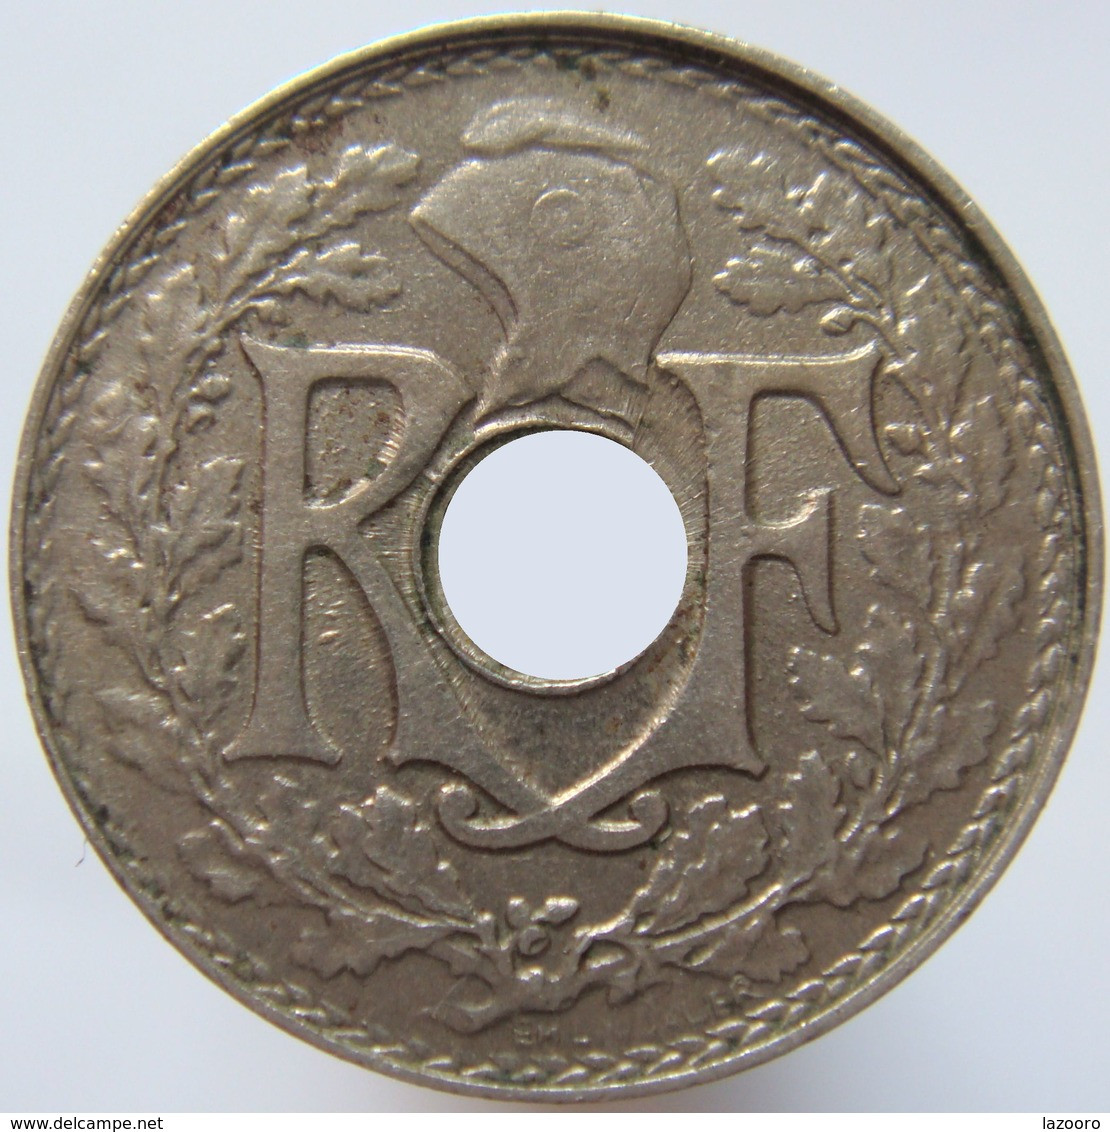 LaZooRo: France 5 Cents 1922 XF Poissy - 5 Centimes